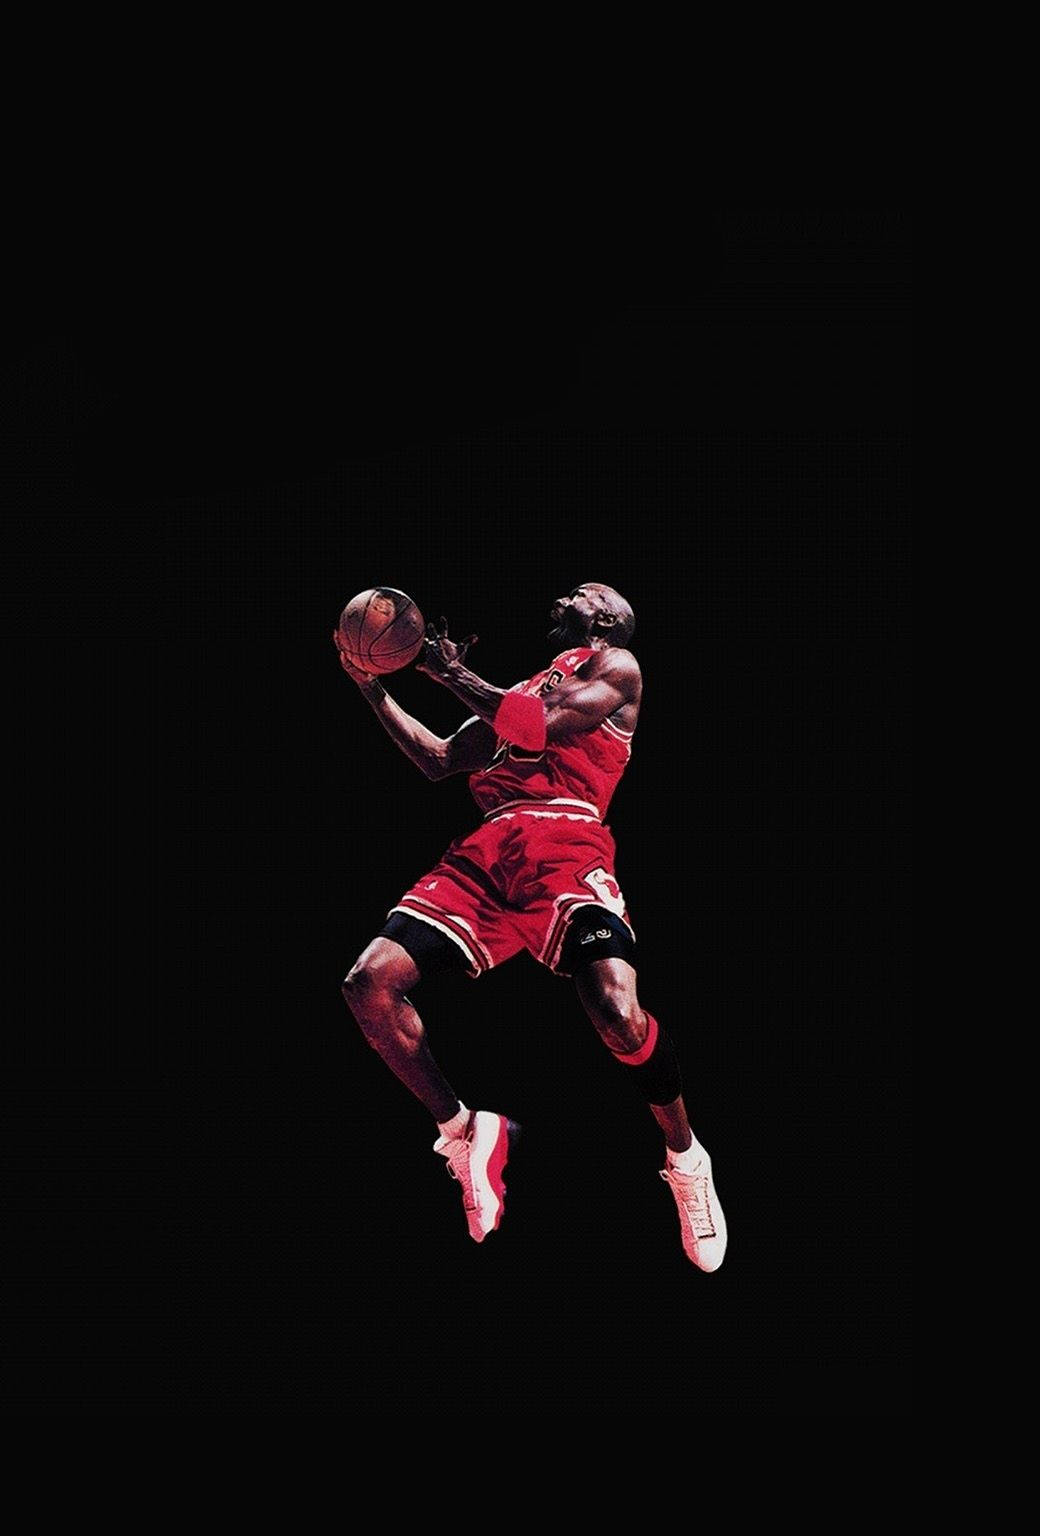 Cool Nike Michael Jordan Affisch Wallpaper